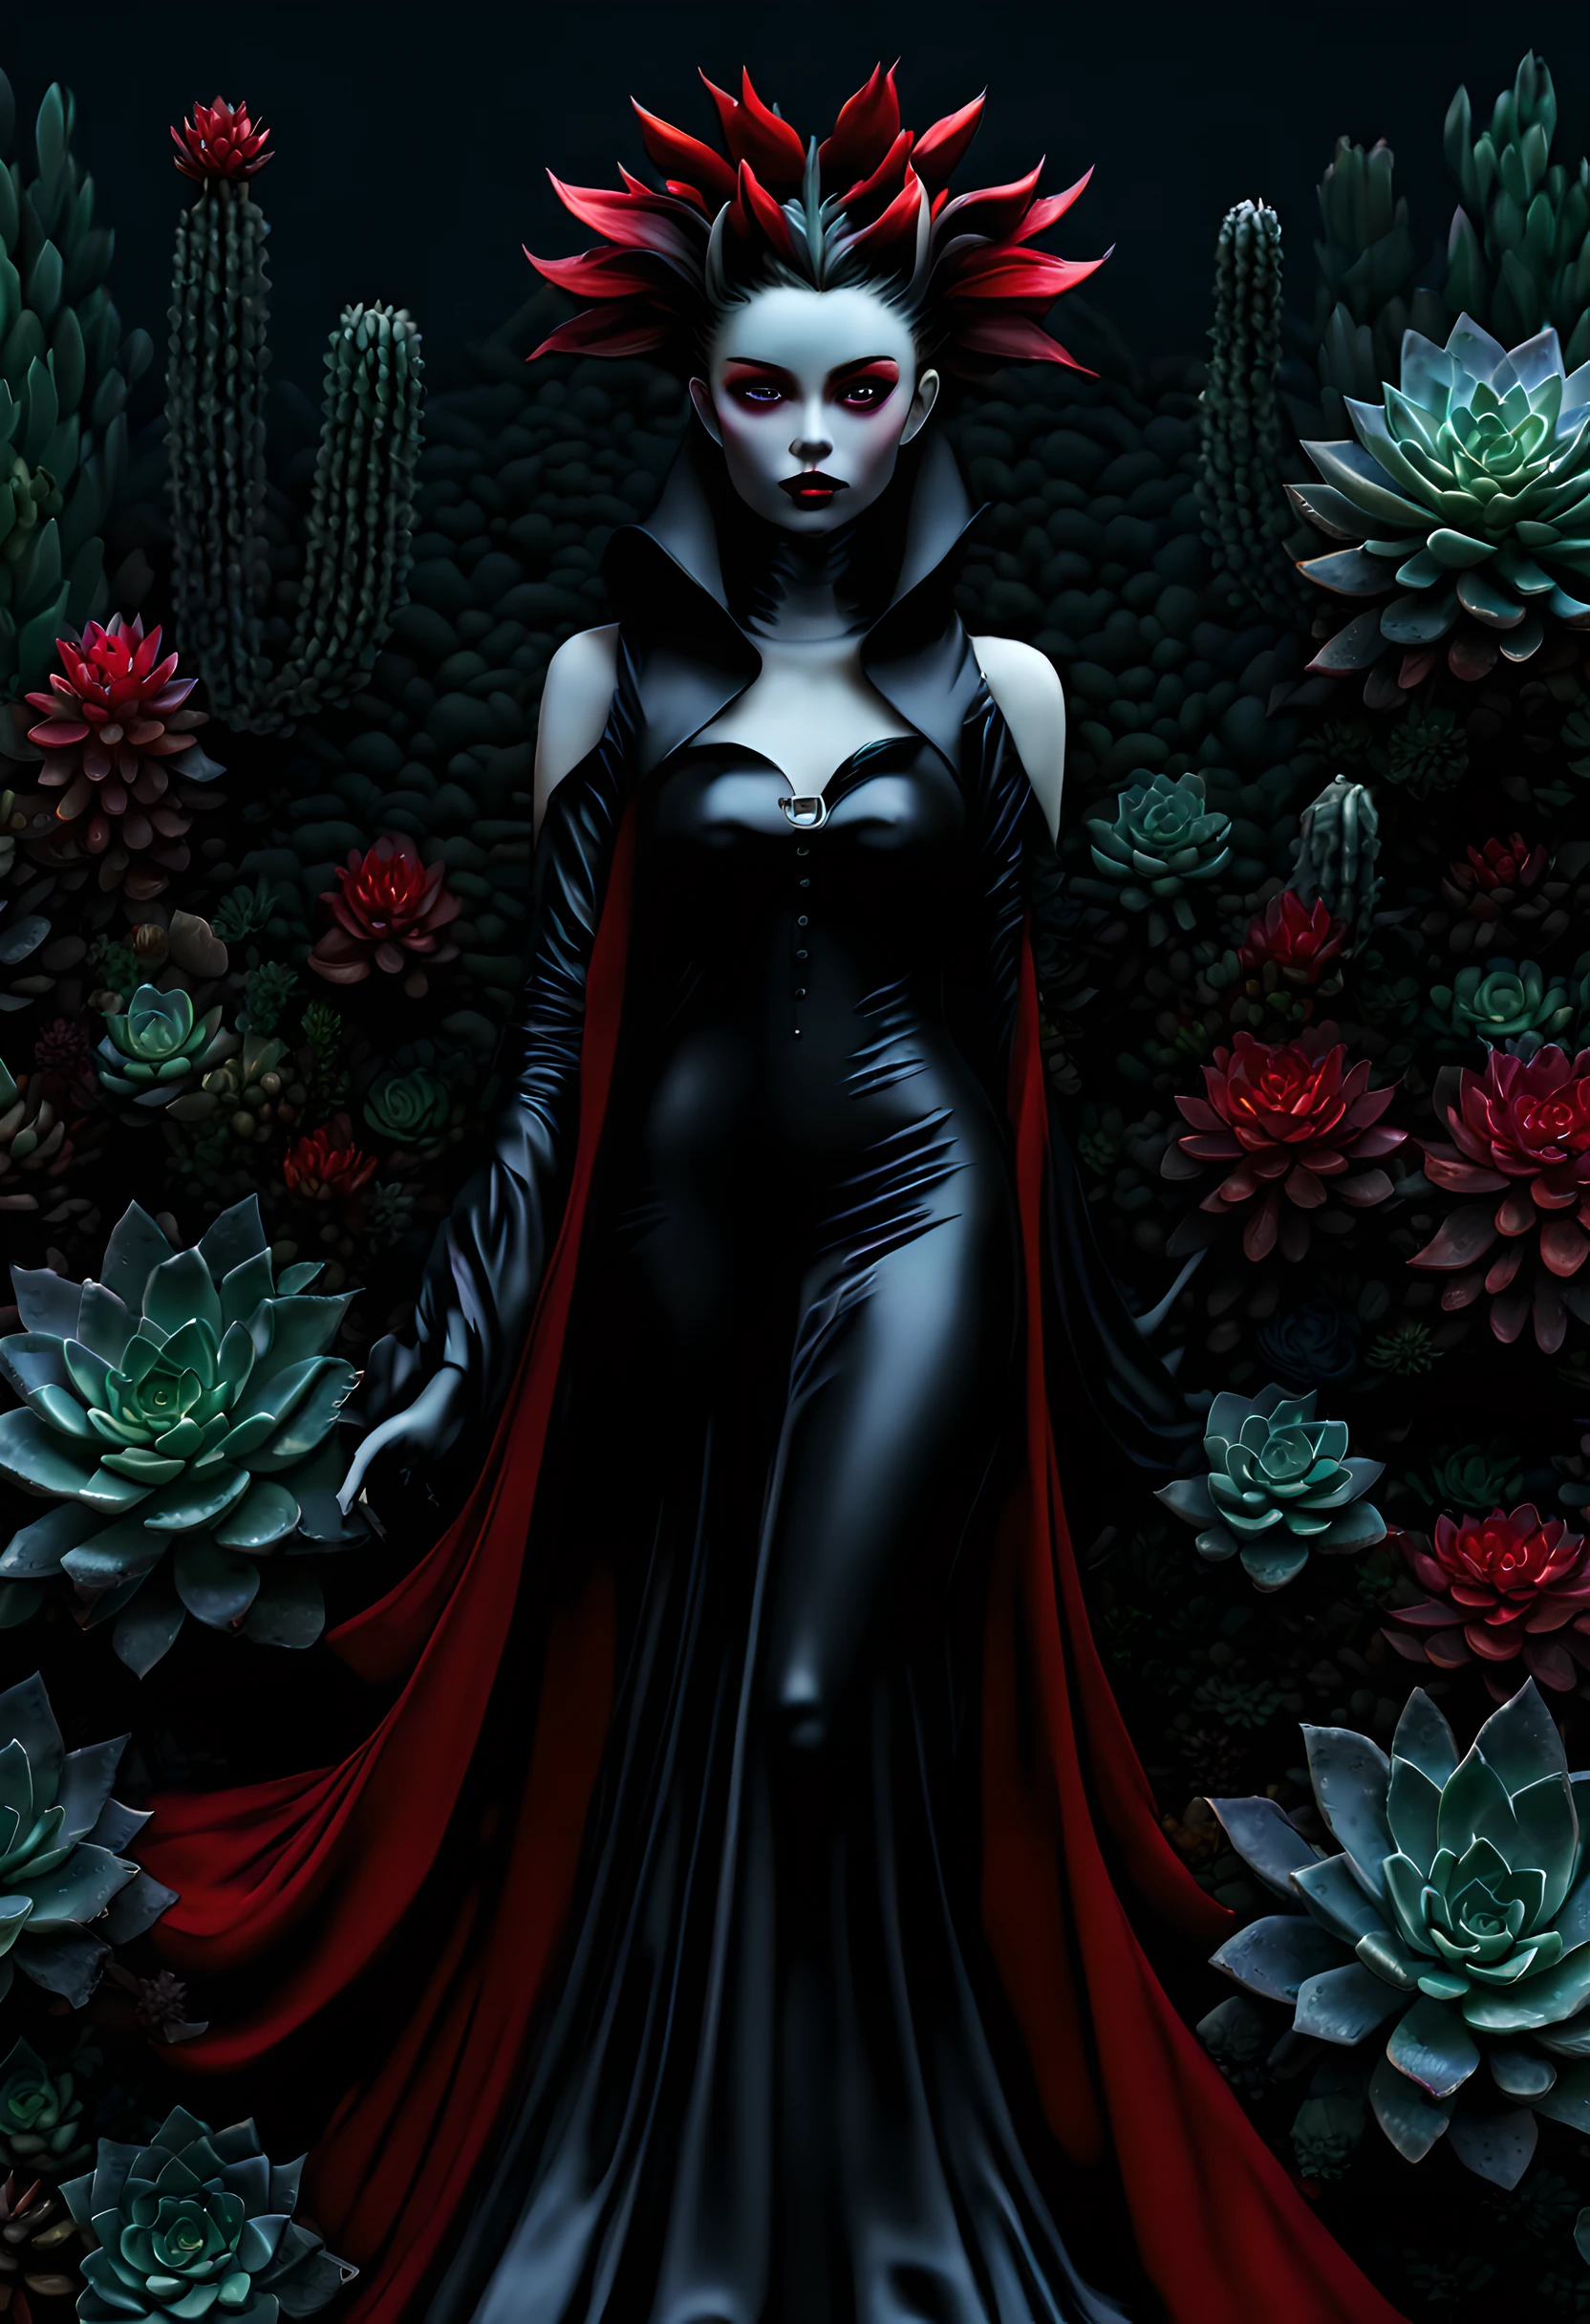 picture of a vampire woman отдыхая в a (черный:1.2) и (красный:1.2) coloкрасный succulents meadow, все тело, изысканная красота (Ультрадетализированный, шедевр, Лучшее качество: 1.4) женщина-вампир, динамический угол (лучший подробный, шедевр, Лучшее качество), Ультрадетализированный face (Ультрадетализированный, шедевр, Лучшее качество), ультра женственный, серая кожа, белокурые волосы, волнистые волосы, динамичный цвет глаз, холодные глаза, блестящие глаза, напряженные глаза, dark красный lips, [клыки], в белом платье, элегантное платье фасона (Ультрадетализированный, шедевр, Лучшее качество), носить синий плащ (Ультрадетализированный, шедевр, Лучшее качество), длинный плащ, струящийся плащ (Ультрадетализированный, шедевр, Лучшее качество), носить ботинки на высоком каблуке, отдыхая в (черный и красный coloкрасный succulents meadow: 1.6), суккуленты капают кровь, full coloкрасный, (идеальный спектр: 1.3),( яркая работа: 1.4) vibrant shades of красный, и черный) восход луны, лунный свет, сейчас ночь, высокая детализация, Фэнтези-арт, RPG art Лучшее качество, 16К, [Ультрадетализированный], шедевр, Лучшее качество, (Ультрадетализированный), все тело, ультра широкий план, фотореалистичный, войны гильдий